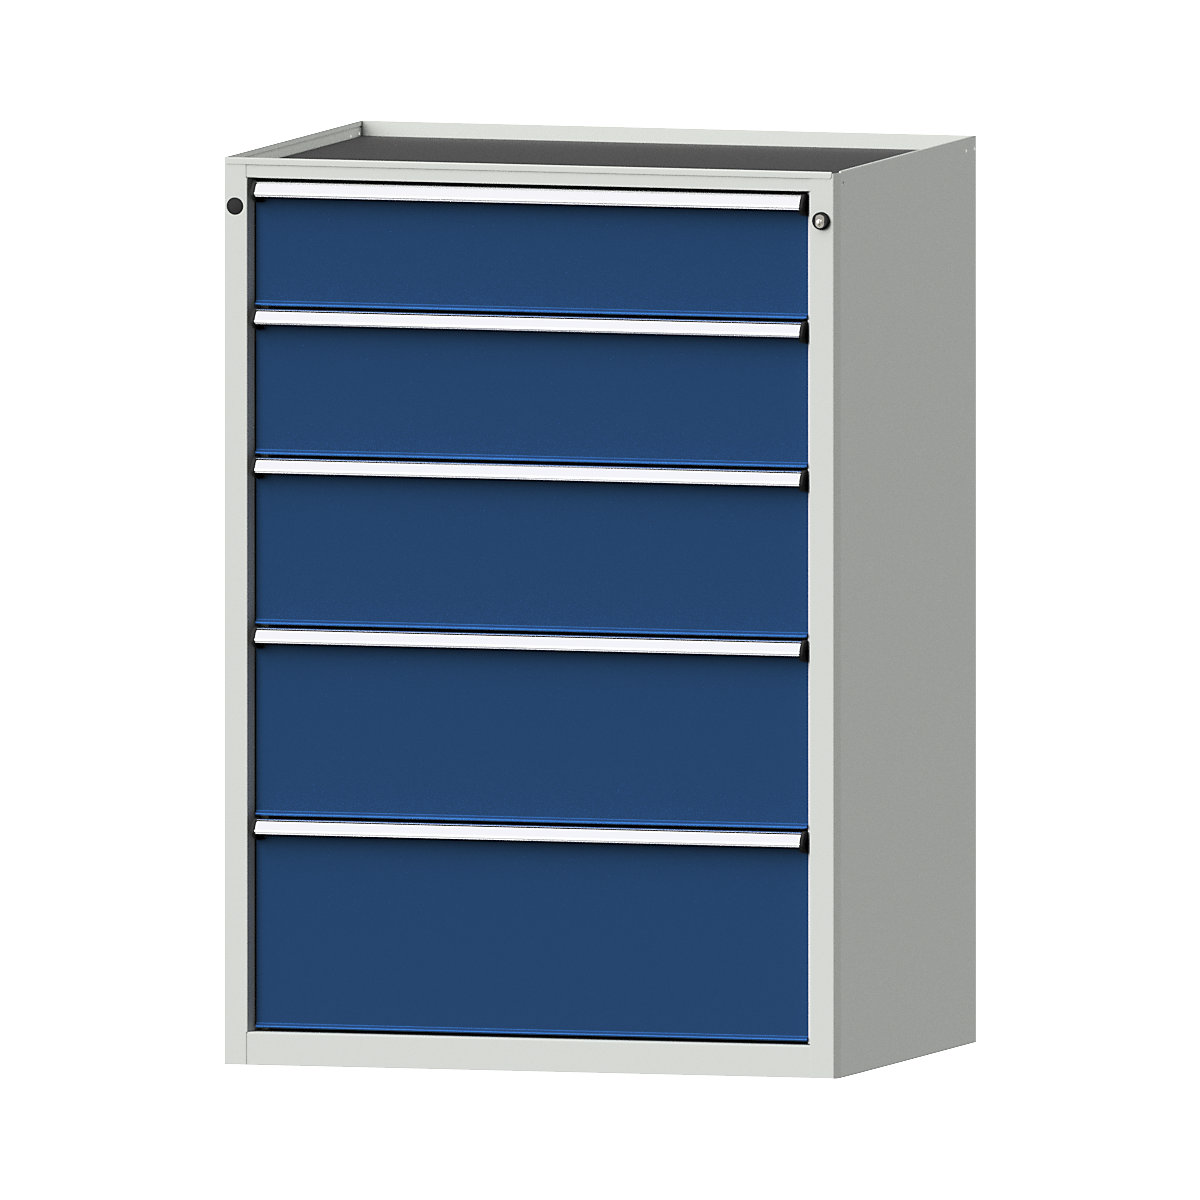 Szafa z szufladami – ANKE, szer. x głęb. 910 x 675 mm, 5 szuflad, wys. 1280 mm, front niebieski gencjanowy-9